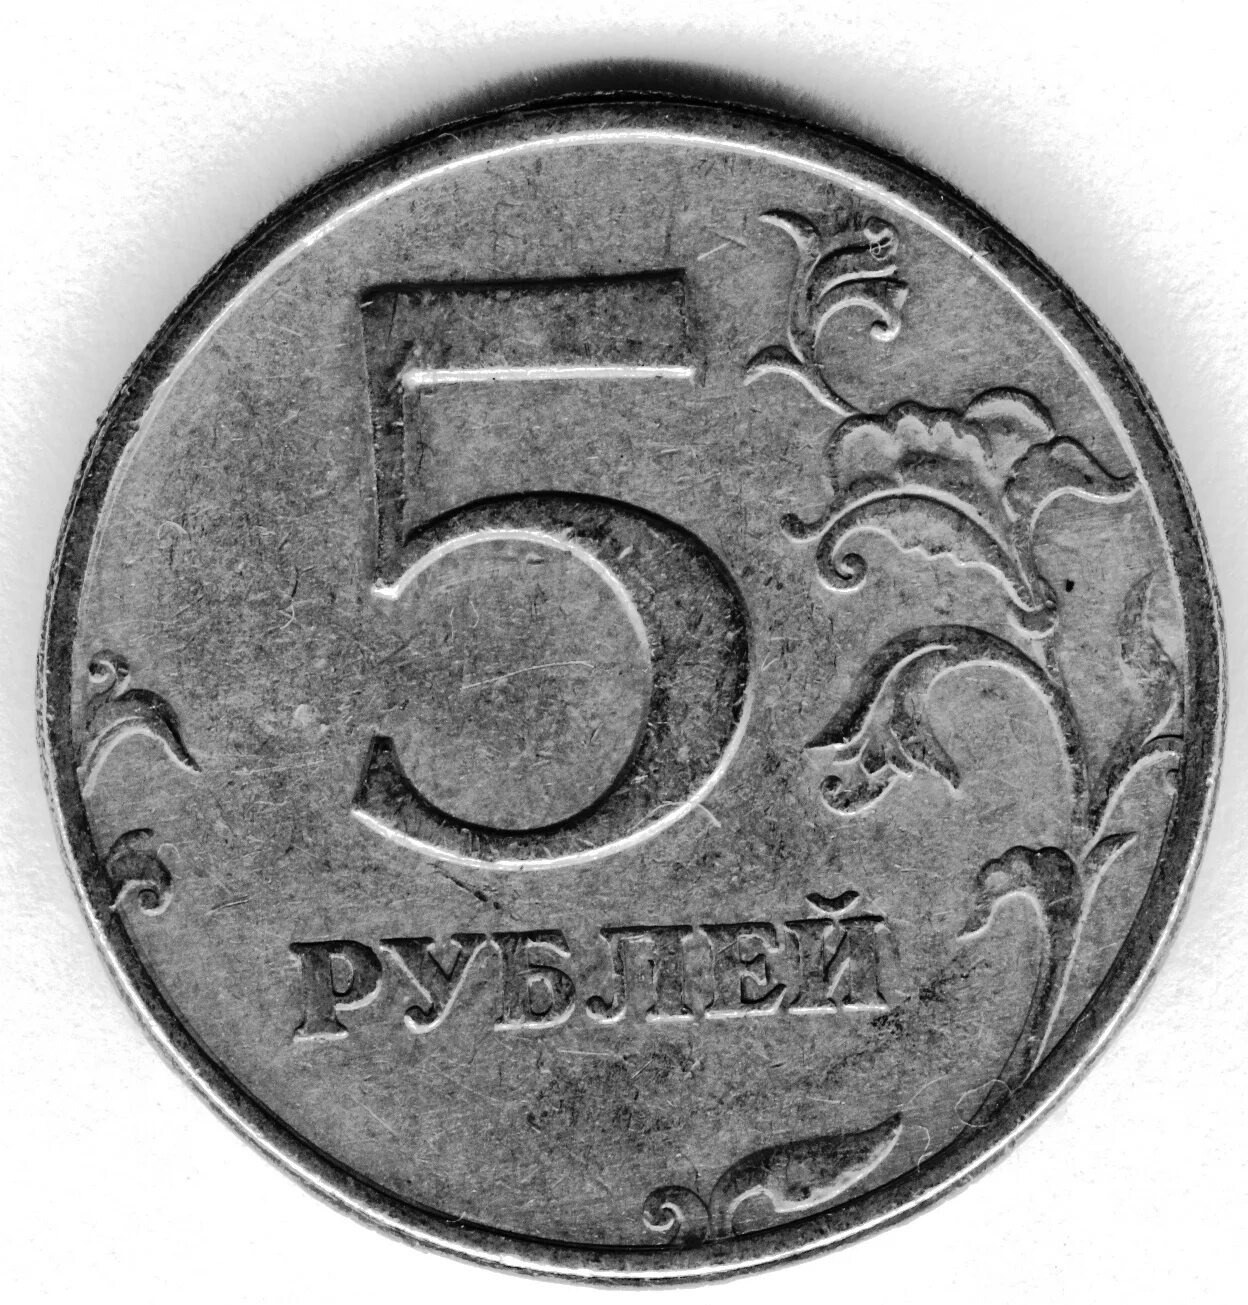 R 5 в рублях. 5 Рублей. Монеты 5 рублей современной. Пять рублей. Старые монеты 5 рублей.